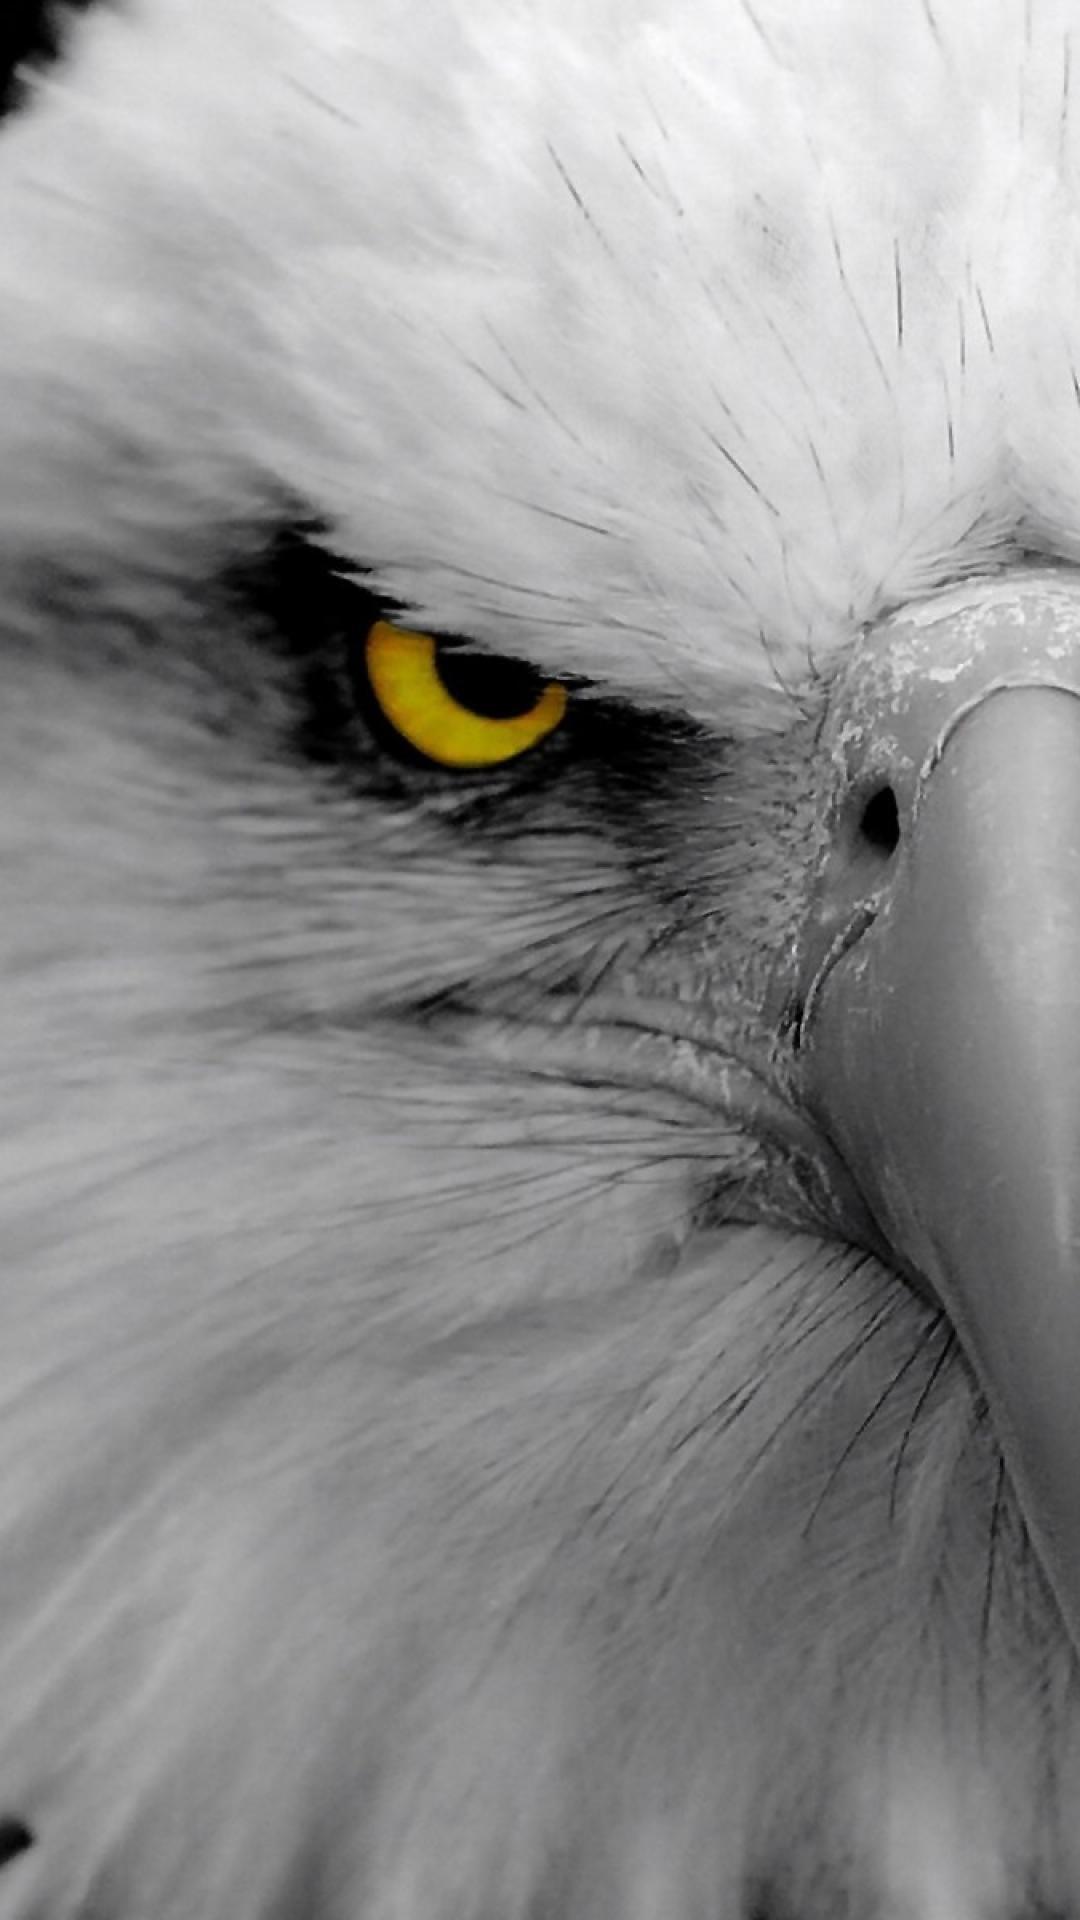 eagle eyes